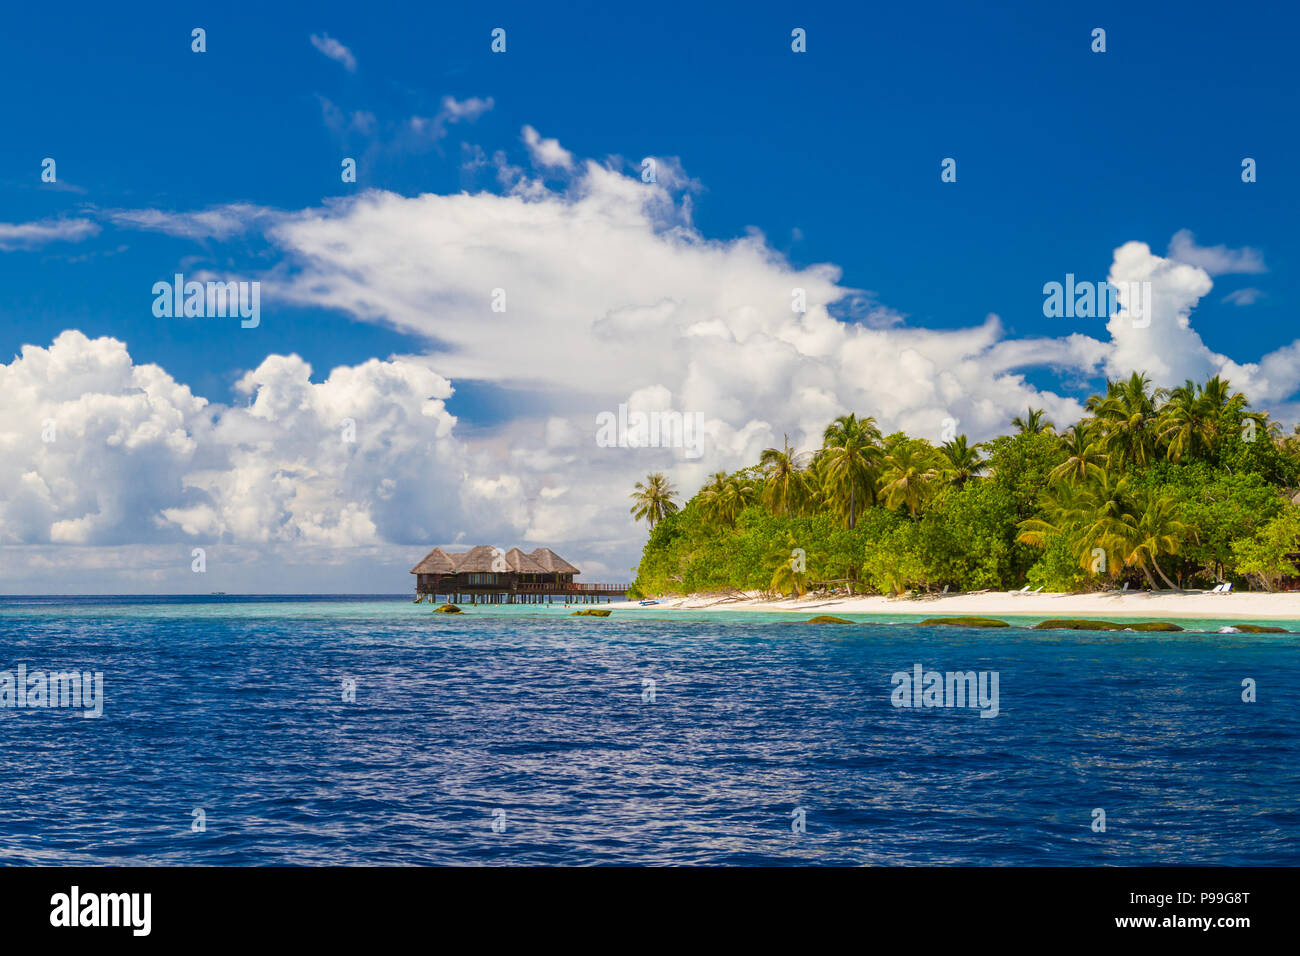 Fantastischen tropischen Strand. Blaues Meer und Luxus Wasser Bungalow mit Palmen und weißem Sand. Inspirational Strand Landschaft Stockfoto